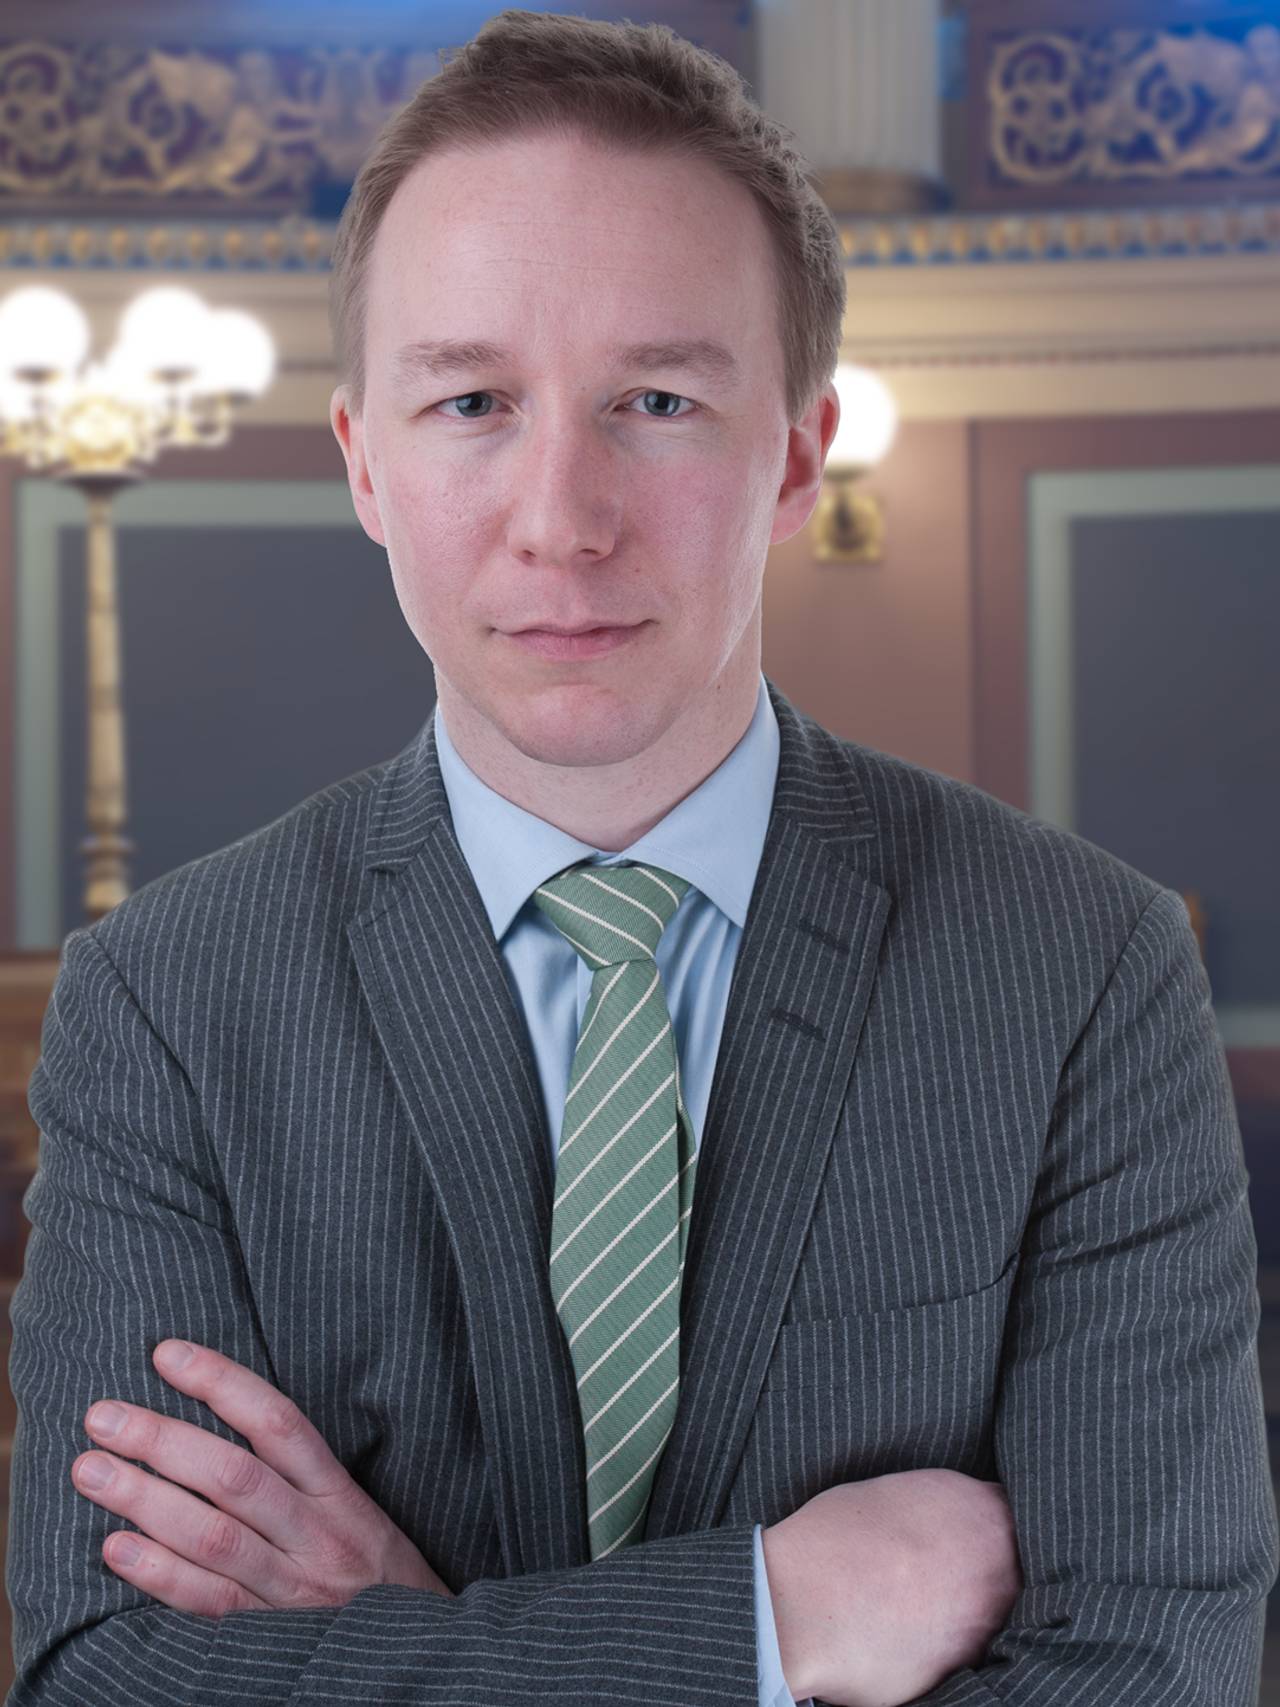 Jon Christian Fløysvik Nordrum er jurist og ekspert i forvaltningsrett ved univeristet i Oslo